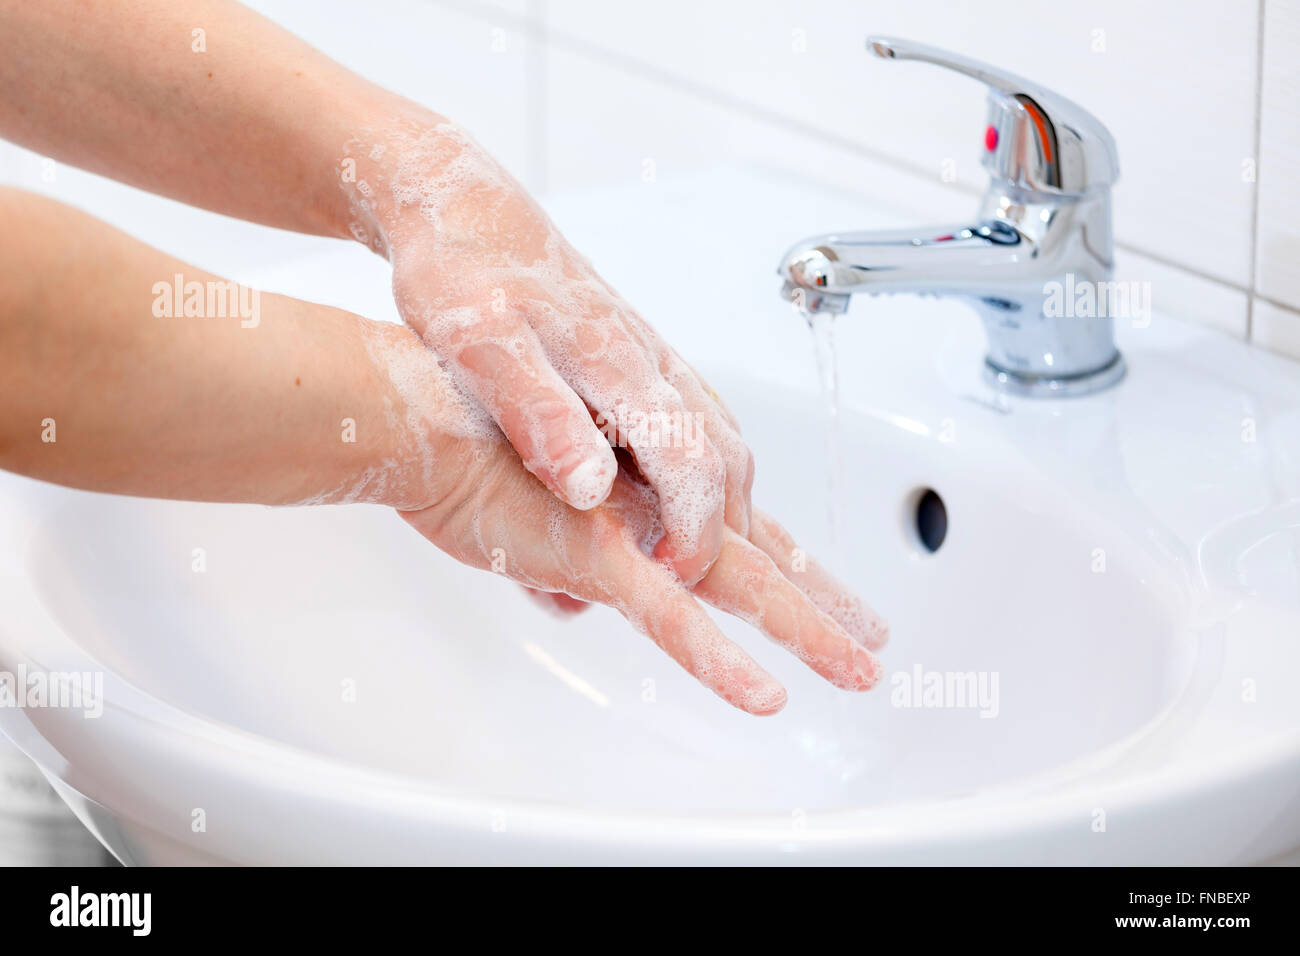 Waschen der Hände mit Seife unter fließendem Wasser. Hygiene und Reinigung der Hände. Stockfoto